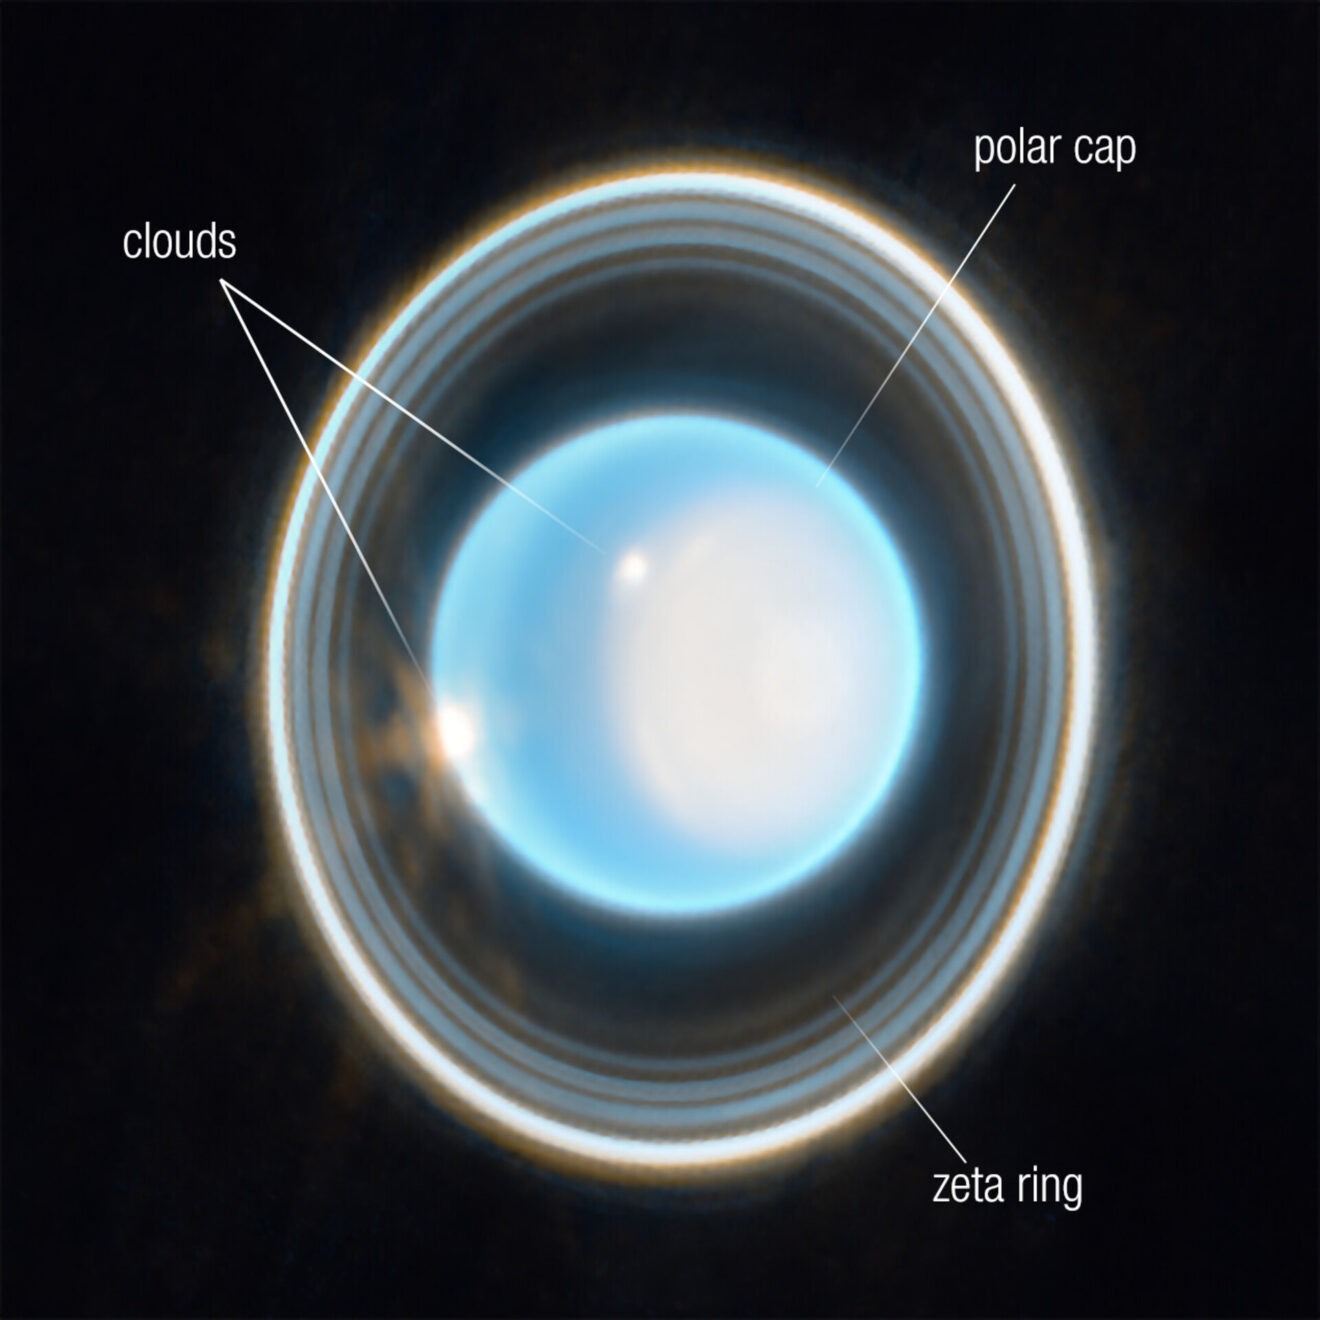 En weer brengt Webb een ringwereld in beeld: dit keer van Uranus